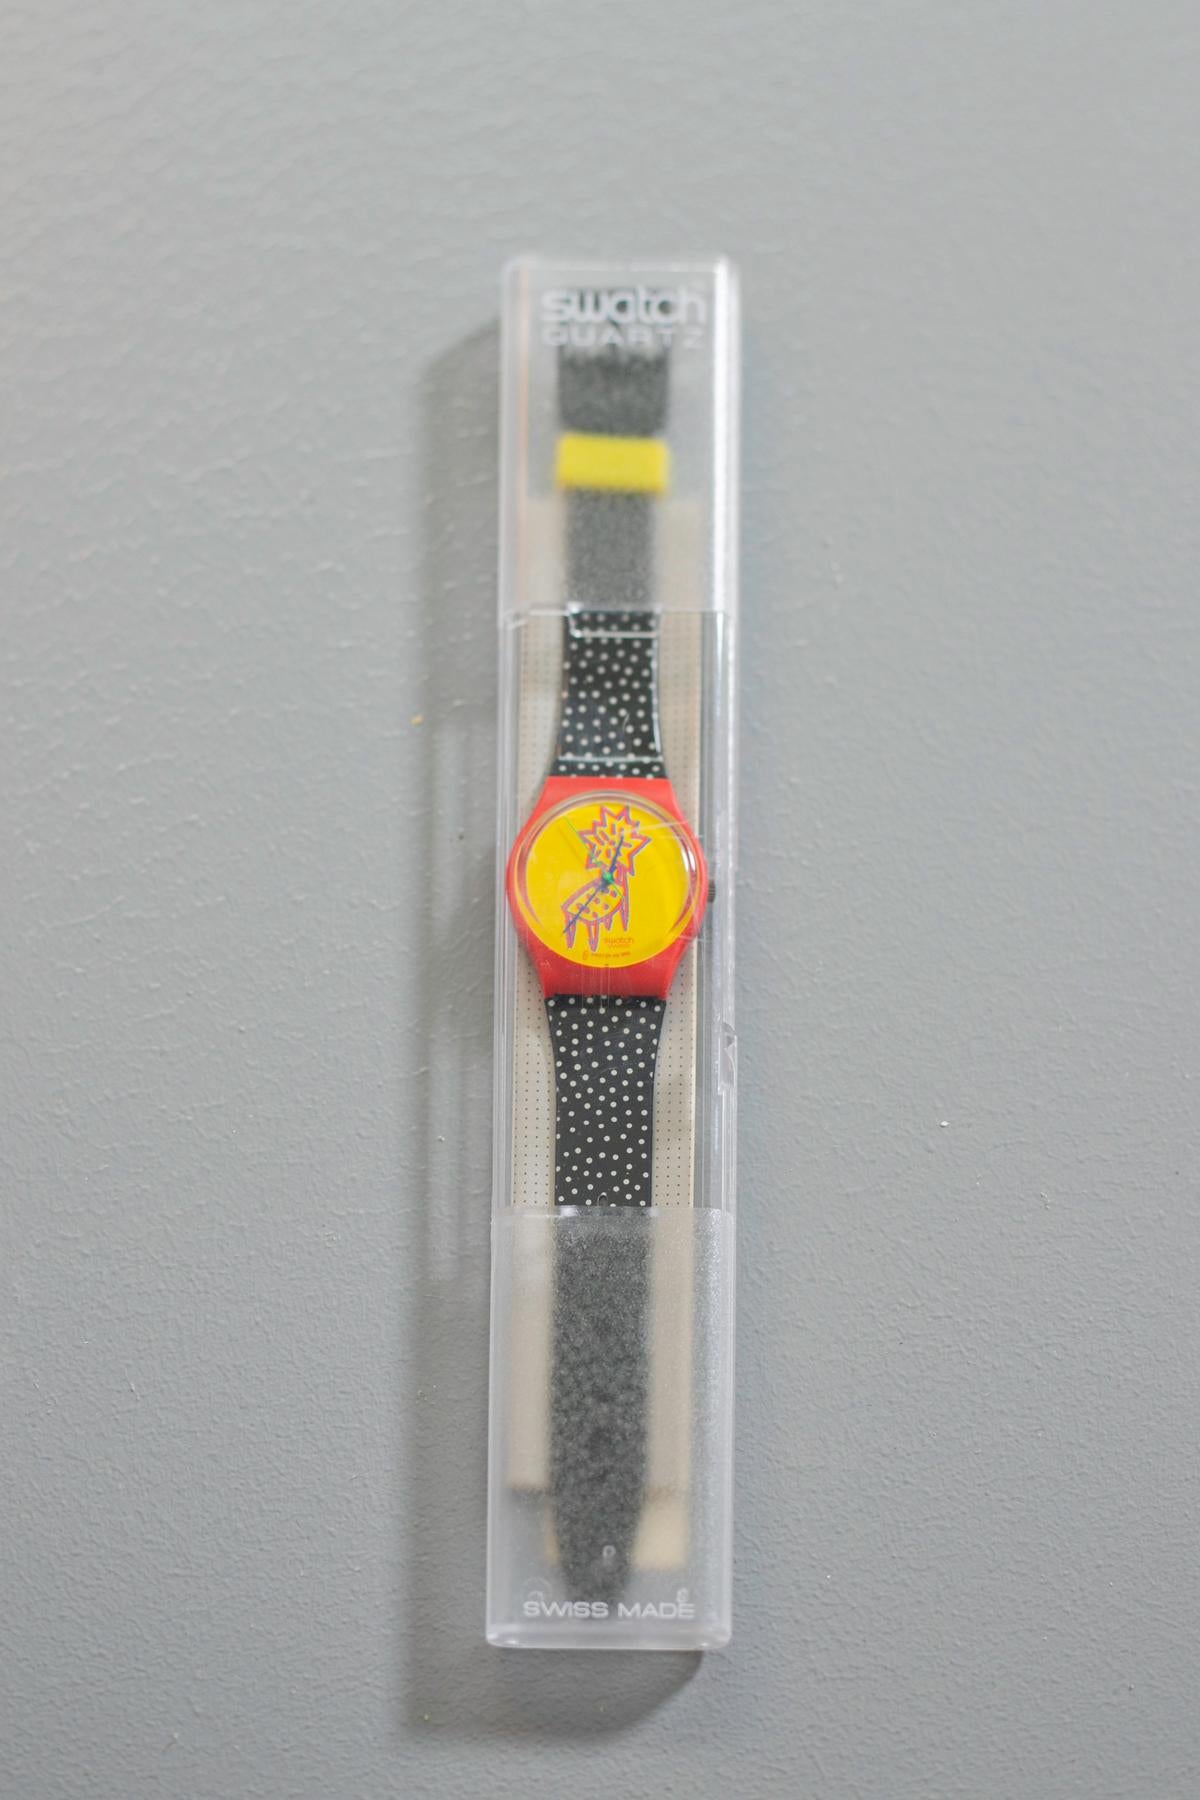 Schöne alte Swatch aus der 1993er Kollektion, entworfen von Jennifer Morla. Auf dem Armband befinden sich Punkte und auf dem Zifferblatt ist ein mit Punkten bedeckter Stuhl abgebildet, von dem diese extravagante und einzigartige Uhr ihren Namen hat.